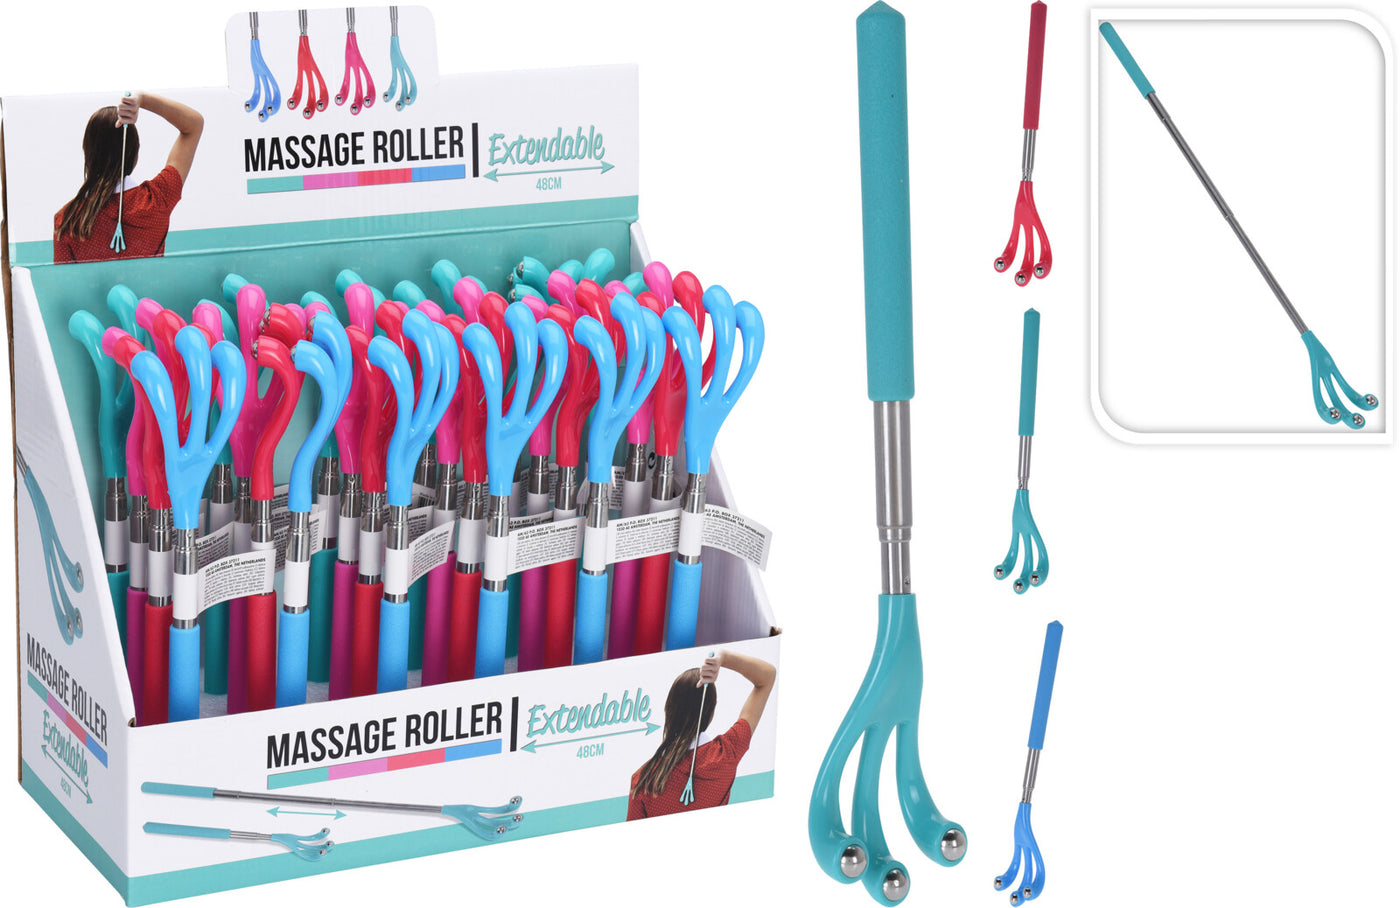 Massage Roller - Kan forlænges 48 cm ass. farver